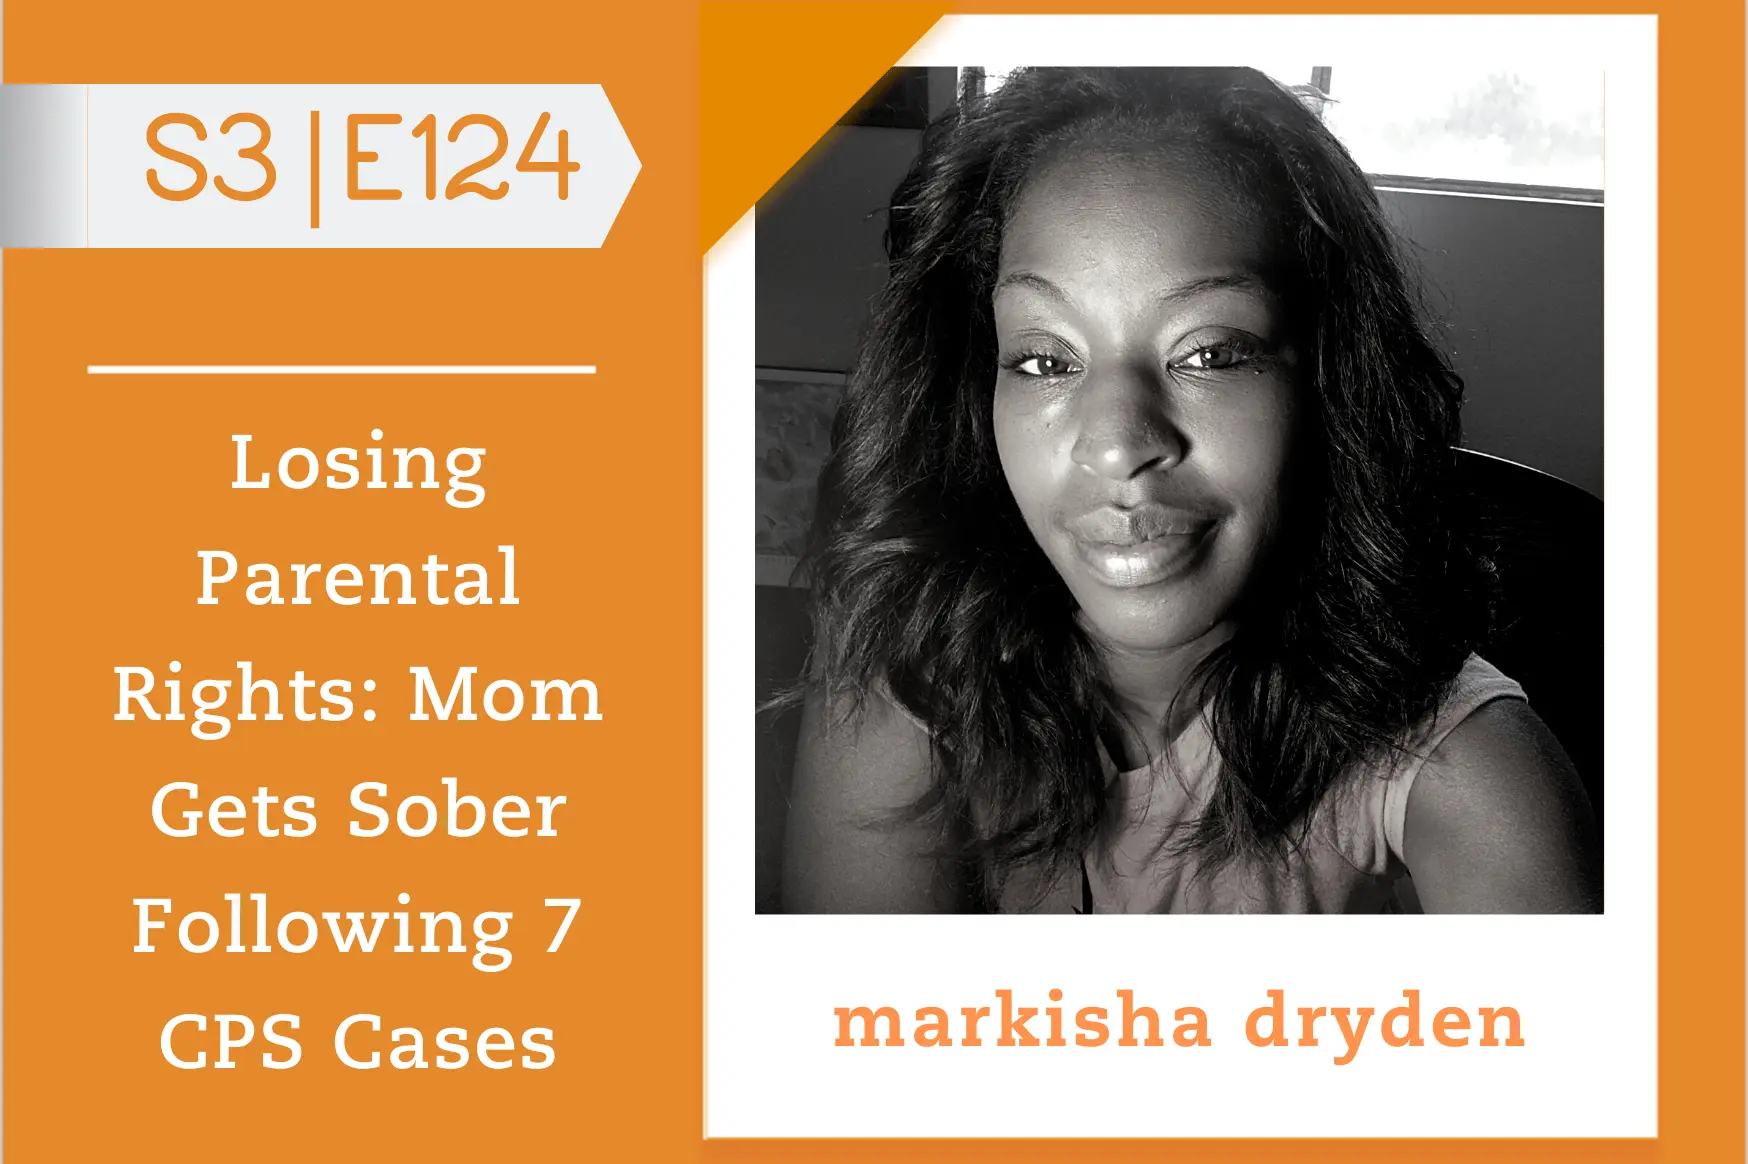 #124 - Markisha Dryden